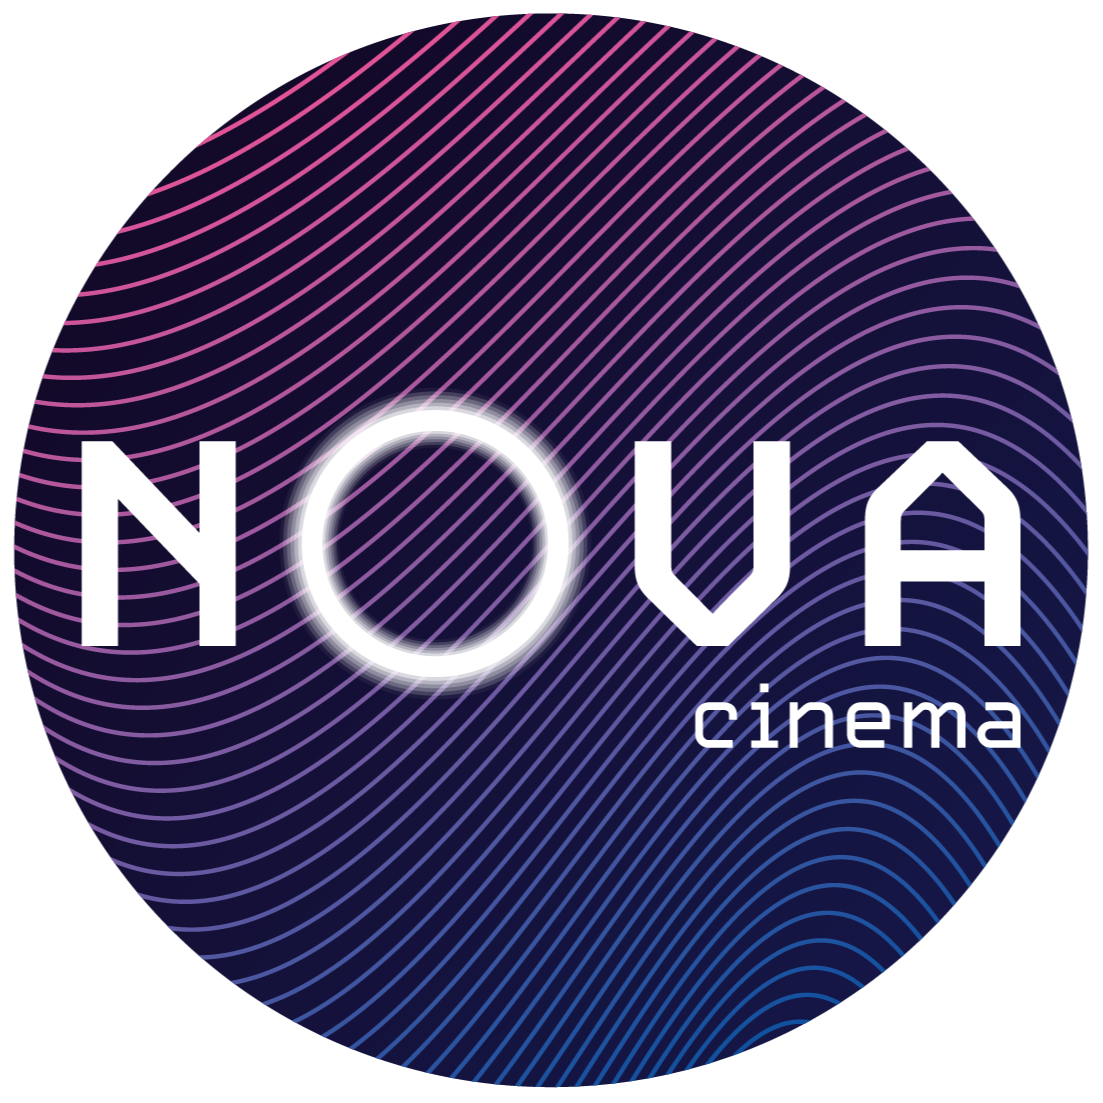 Nova Cinema - Woking, Surrey GU21 6GQ - 03330 096690 | ShowMeLocal.com